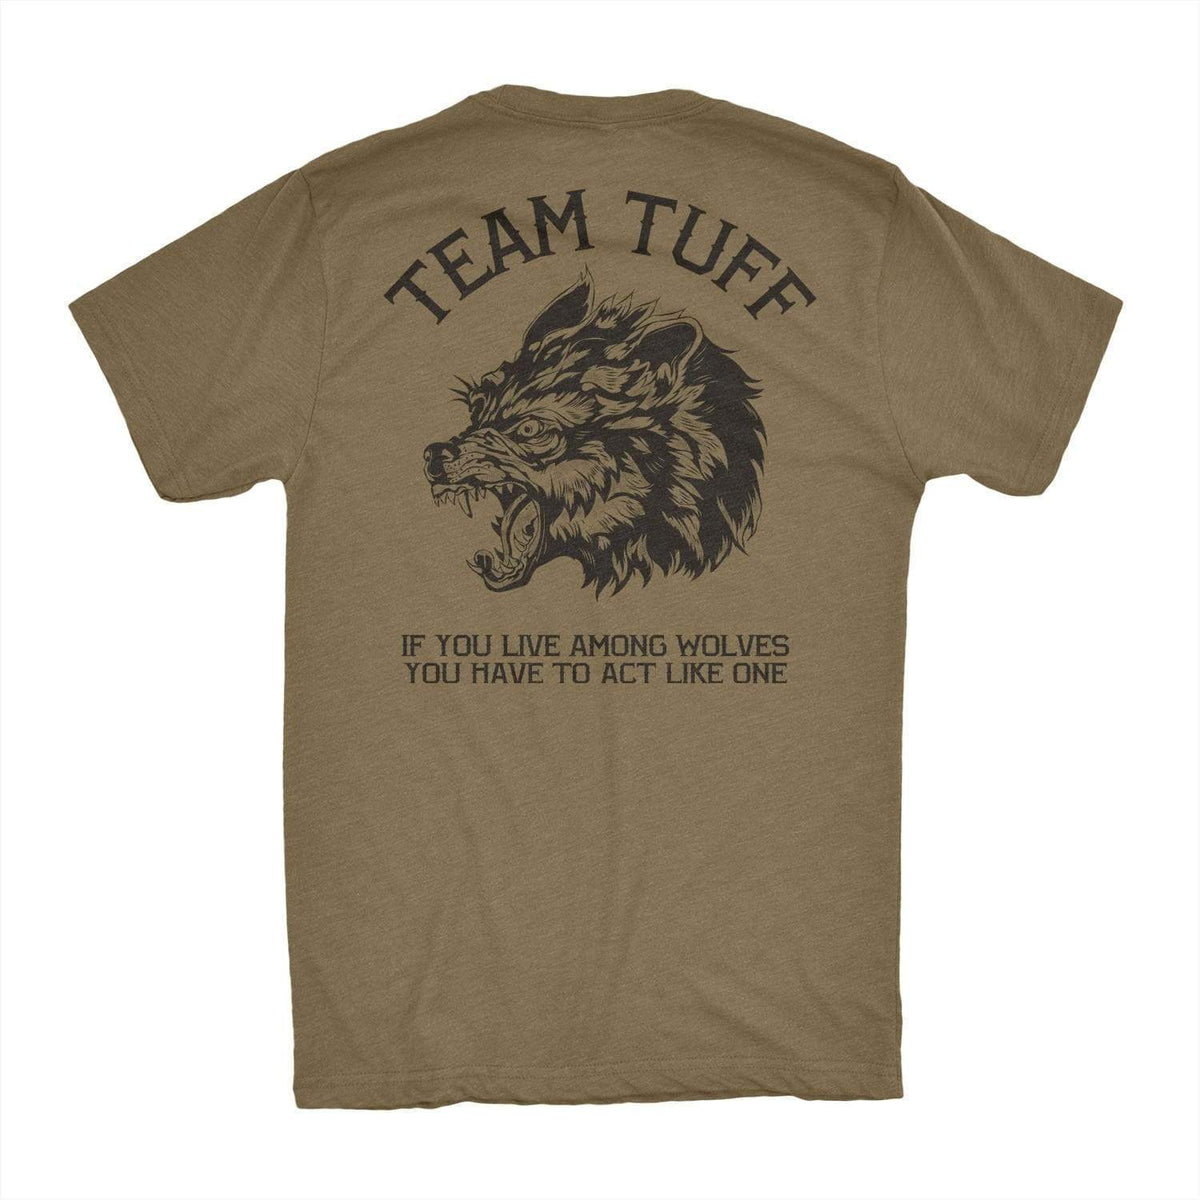 Team TUFF Wolves Club Tee T-shirt